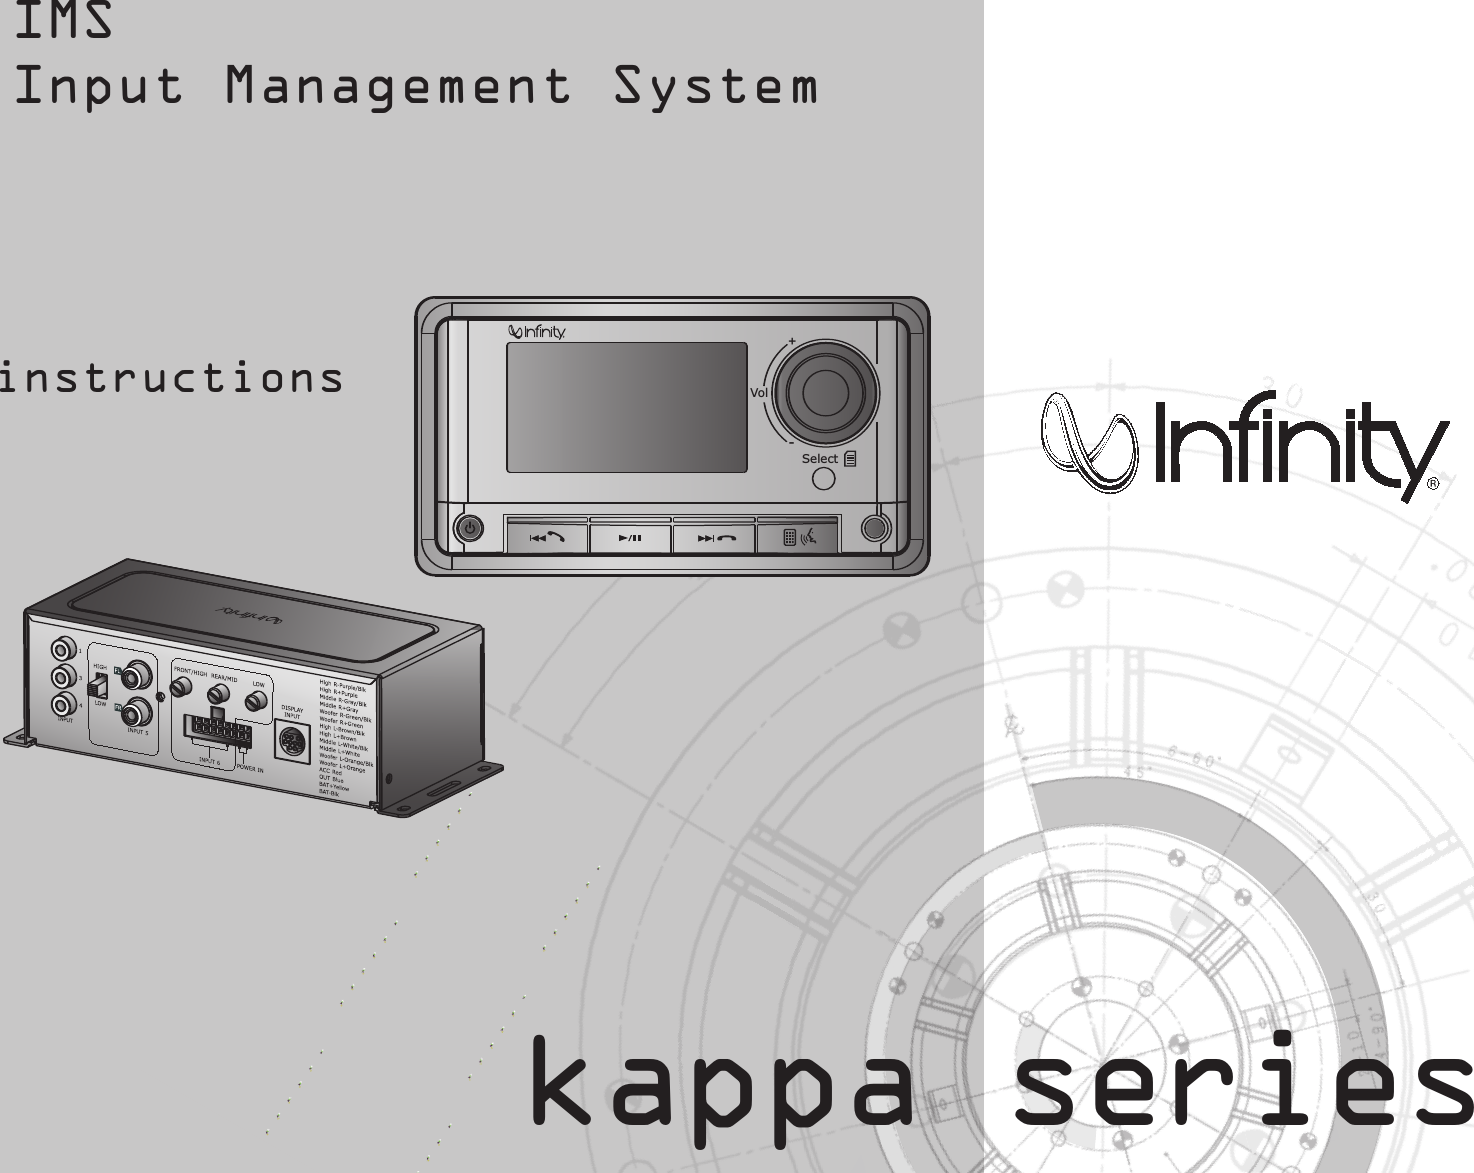 IMSInput Management Systemkappa seriesinstructionsRVol+-Select